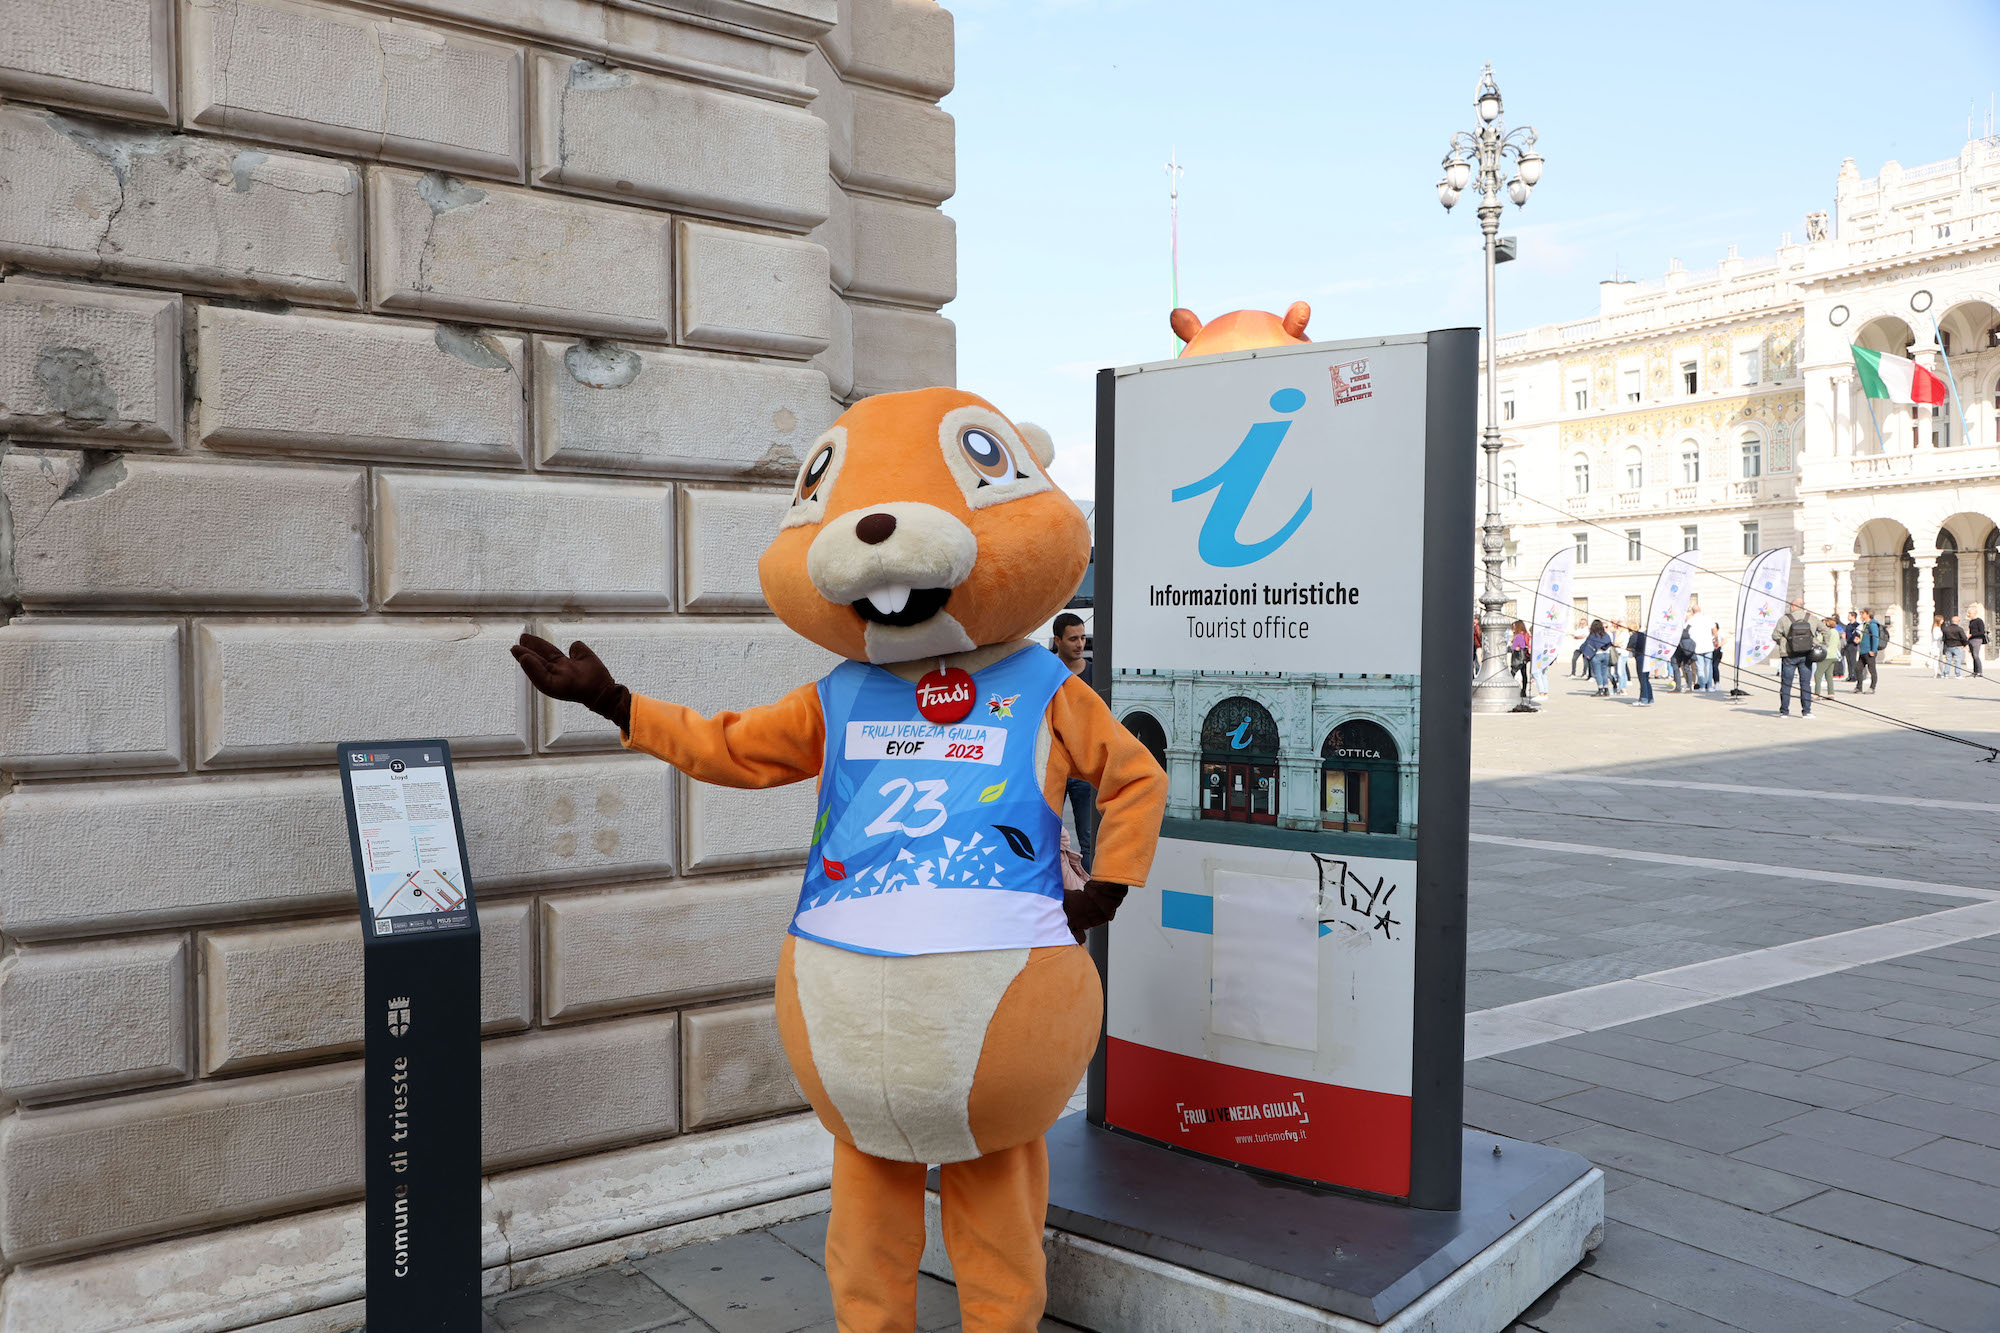 La Mascotte Kugy in piazza dell’Unità d’Italia a Trieste